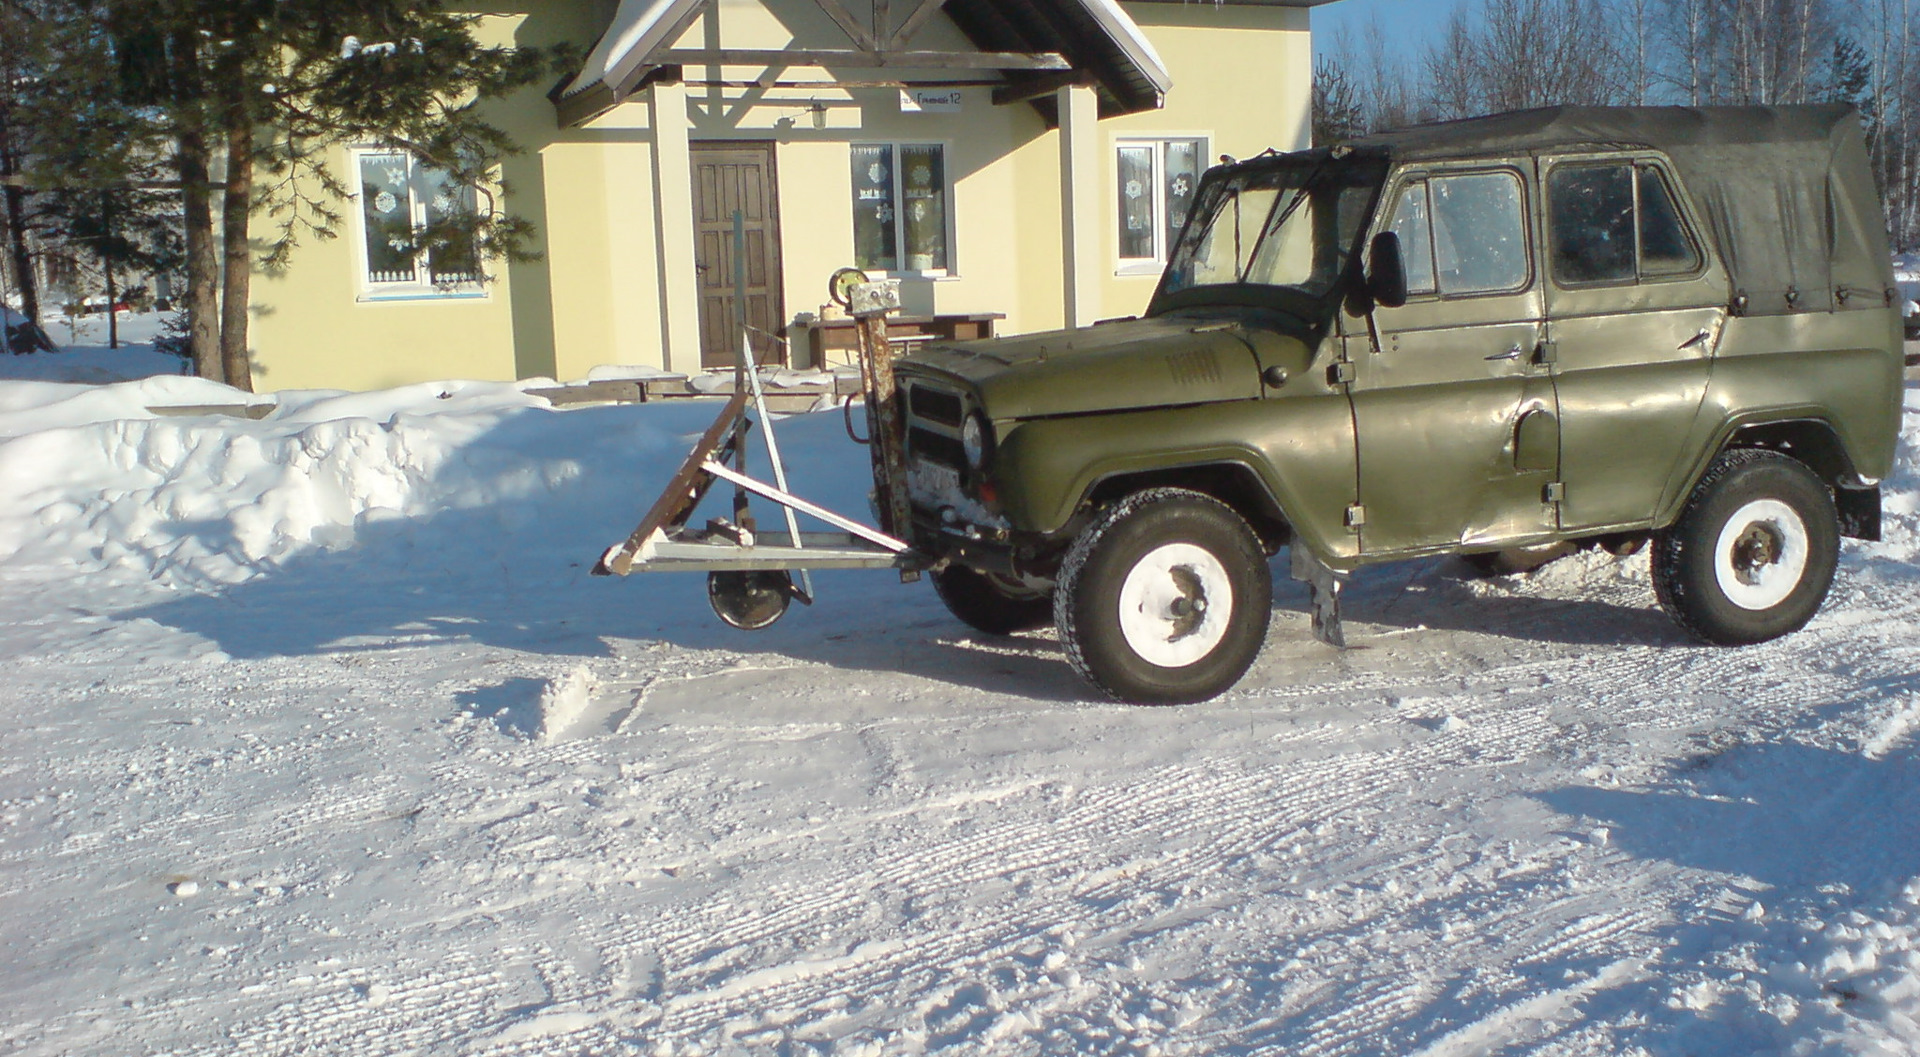 Купить уаз томская. Отвал на УАЗ 469. УАЗ 469 С отвалом для уборки снега. УАЗ 469 снегоуборочный. Отвал для снега на УАЗ 469.